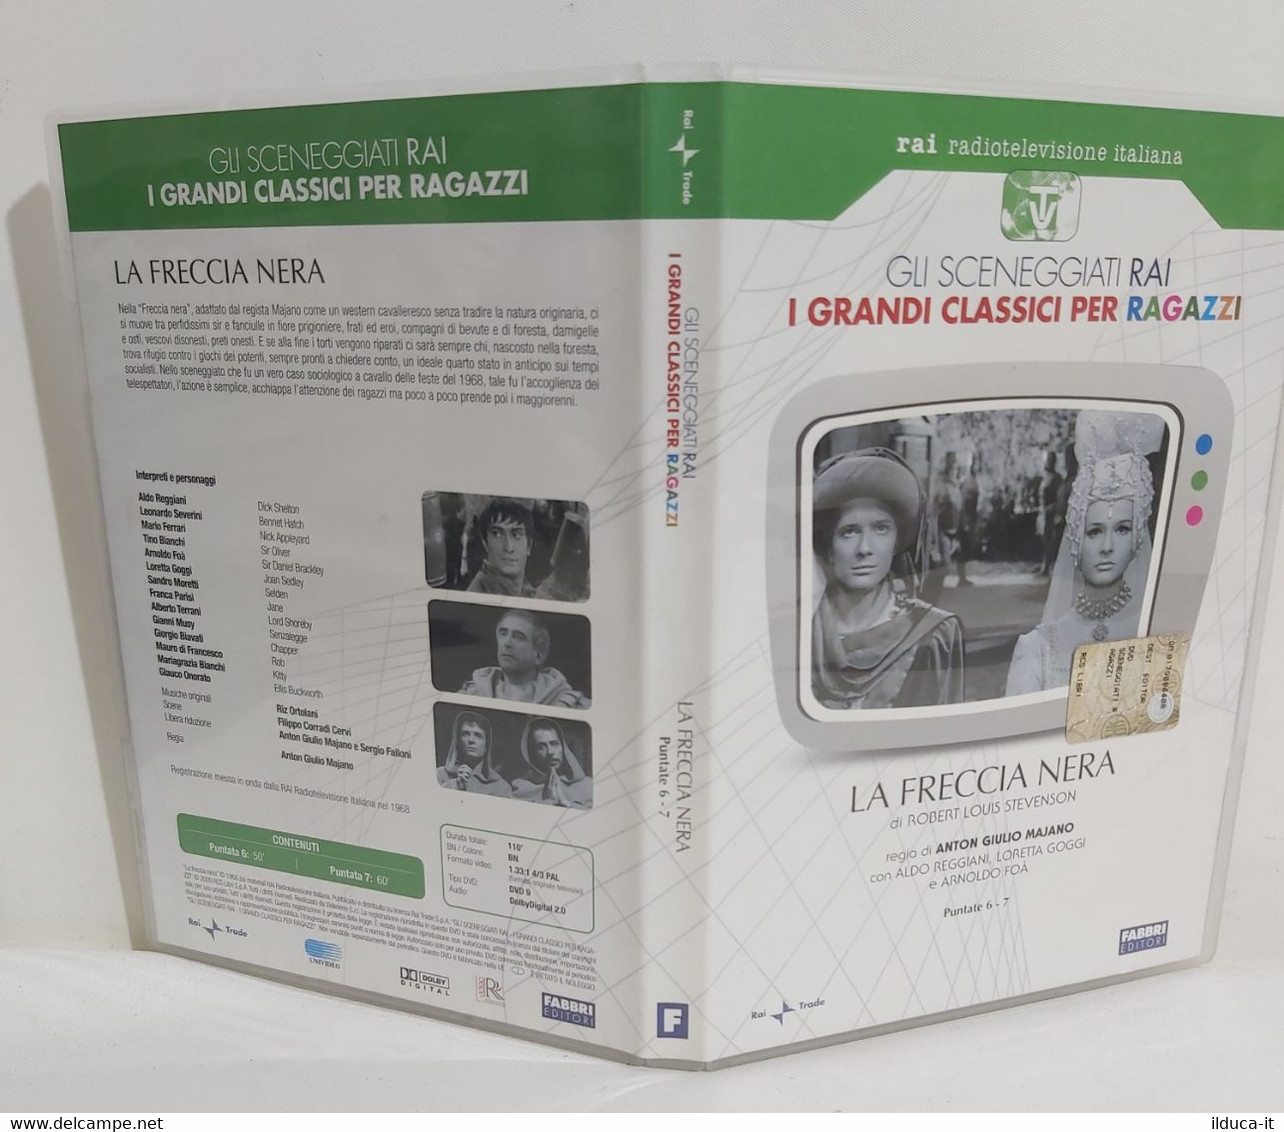 I106202 DVD - Sceneggiati Rai: I Grandi Classici Per Ragazzi: LA FRECCIA NERA - Classiques